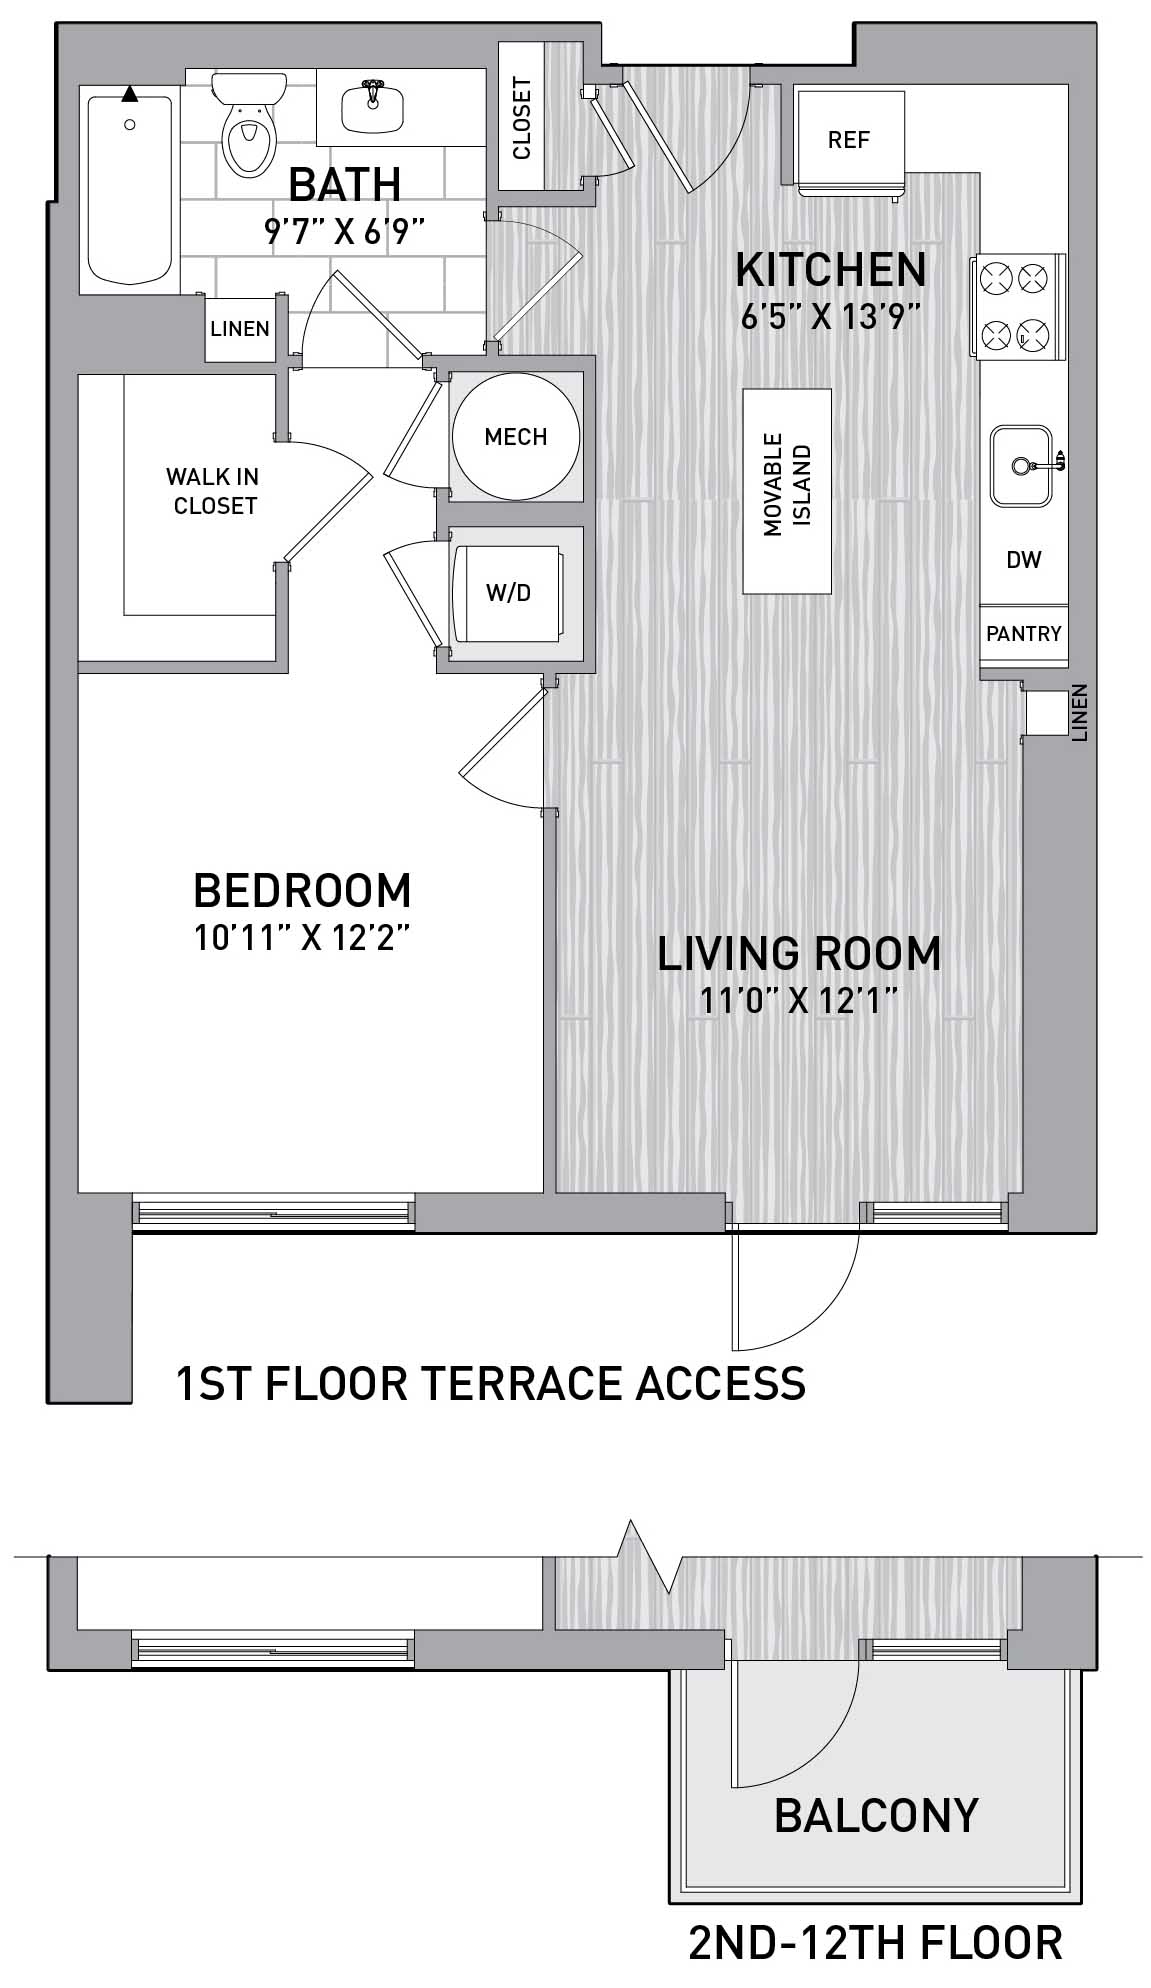 Floorplan Image of unit 151-0308